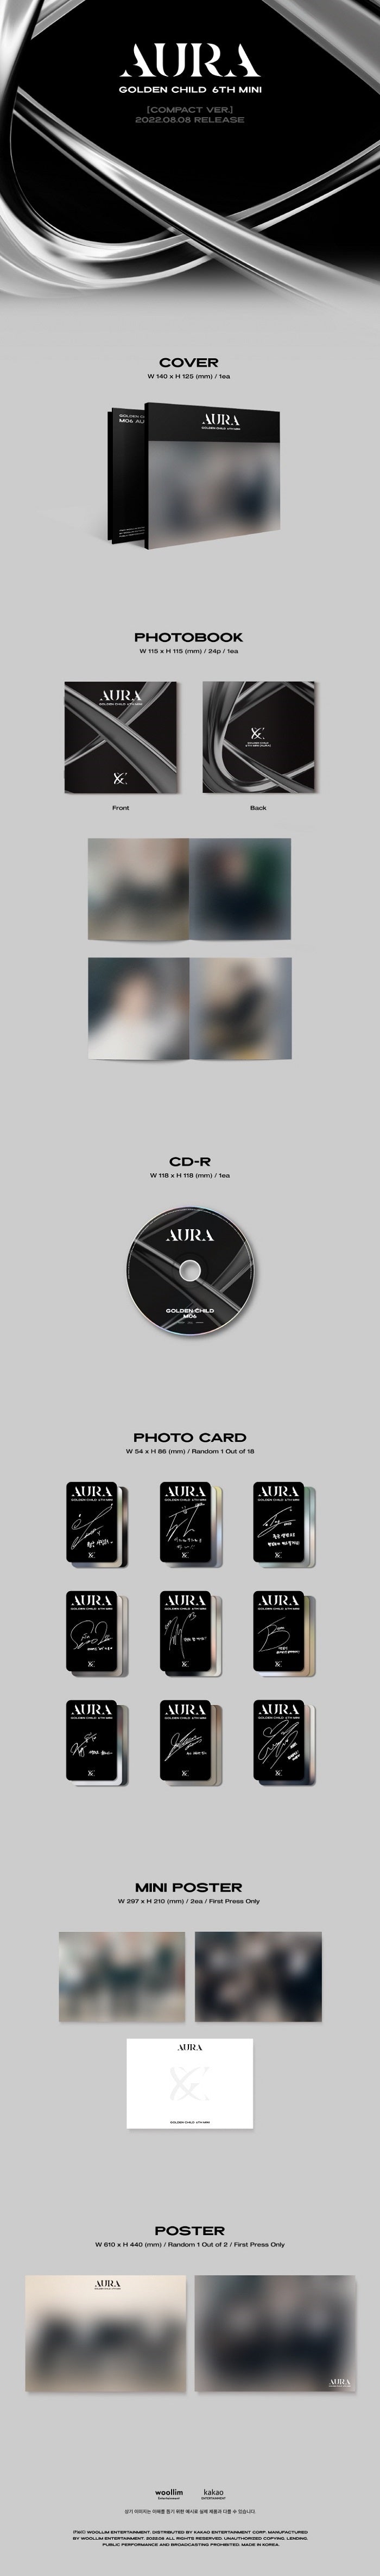 Golden Child – AURA (6. Mini-Album) Compact Ver.